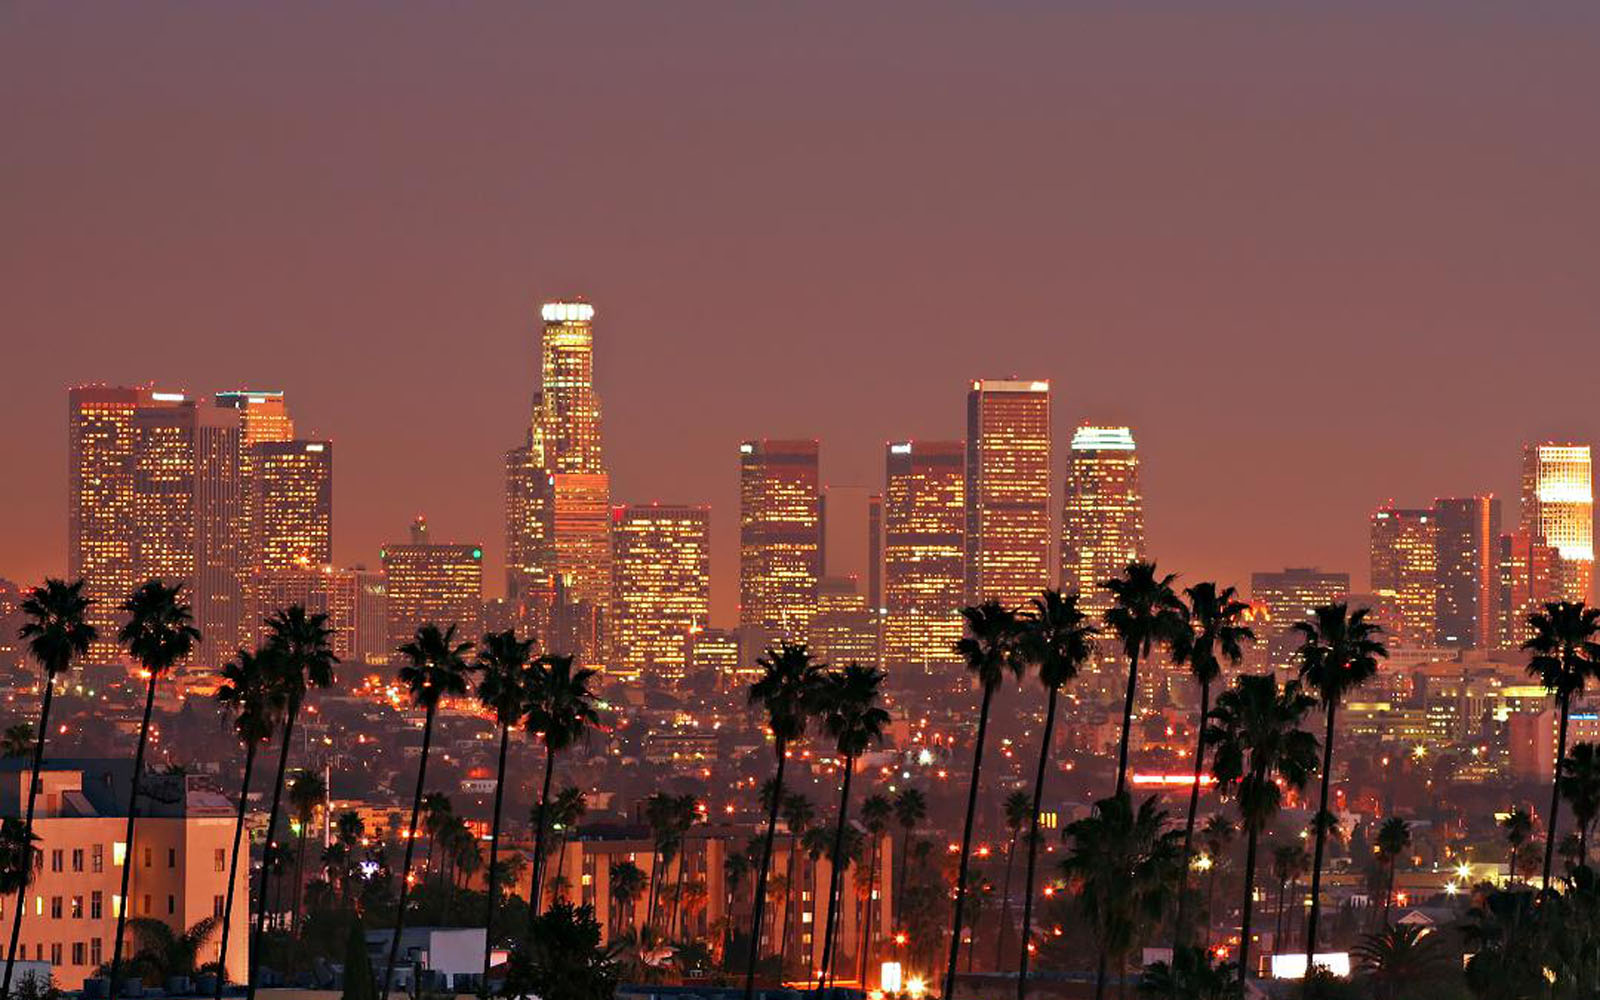 앤젤레스 바탕 화면,시티,도시 풍경,수도권,도시 지역,지평선